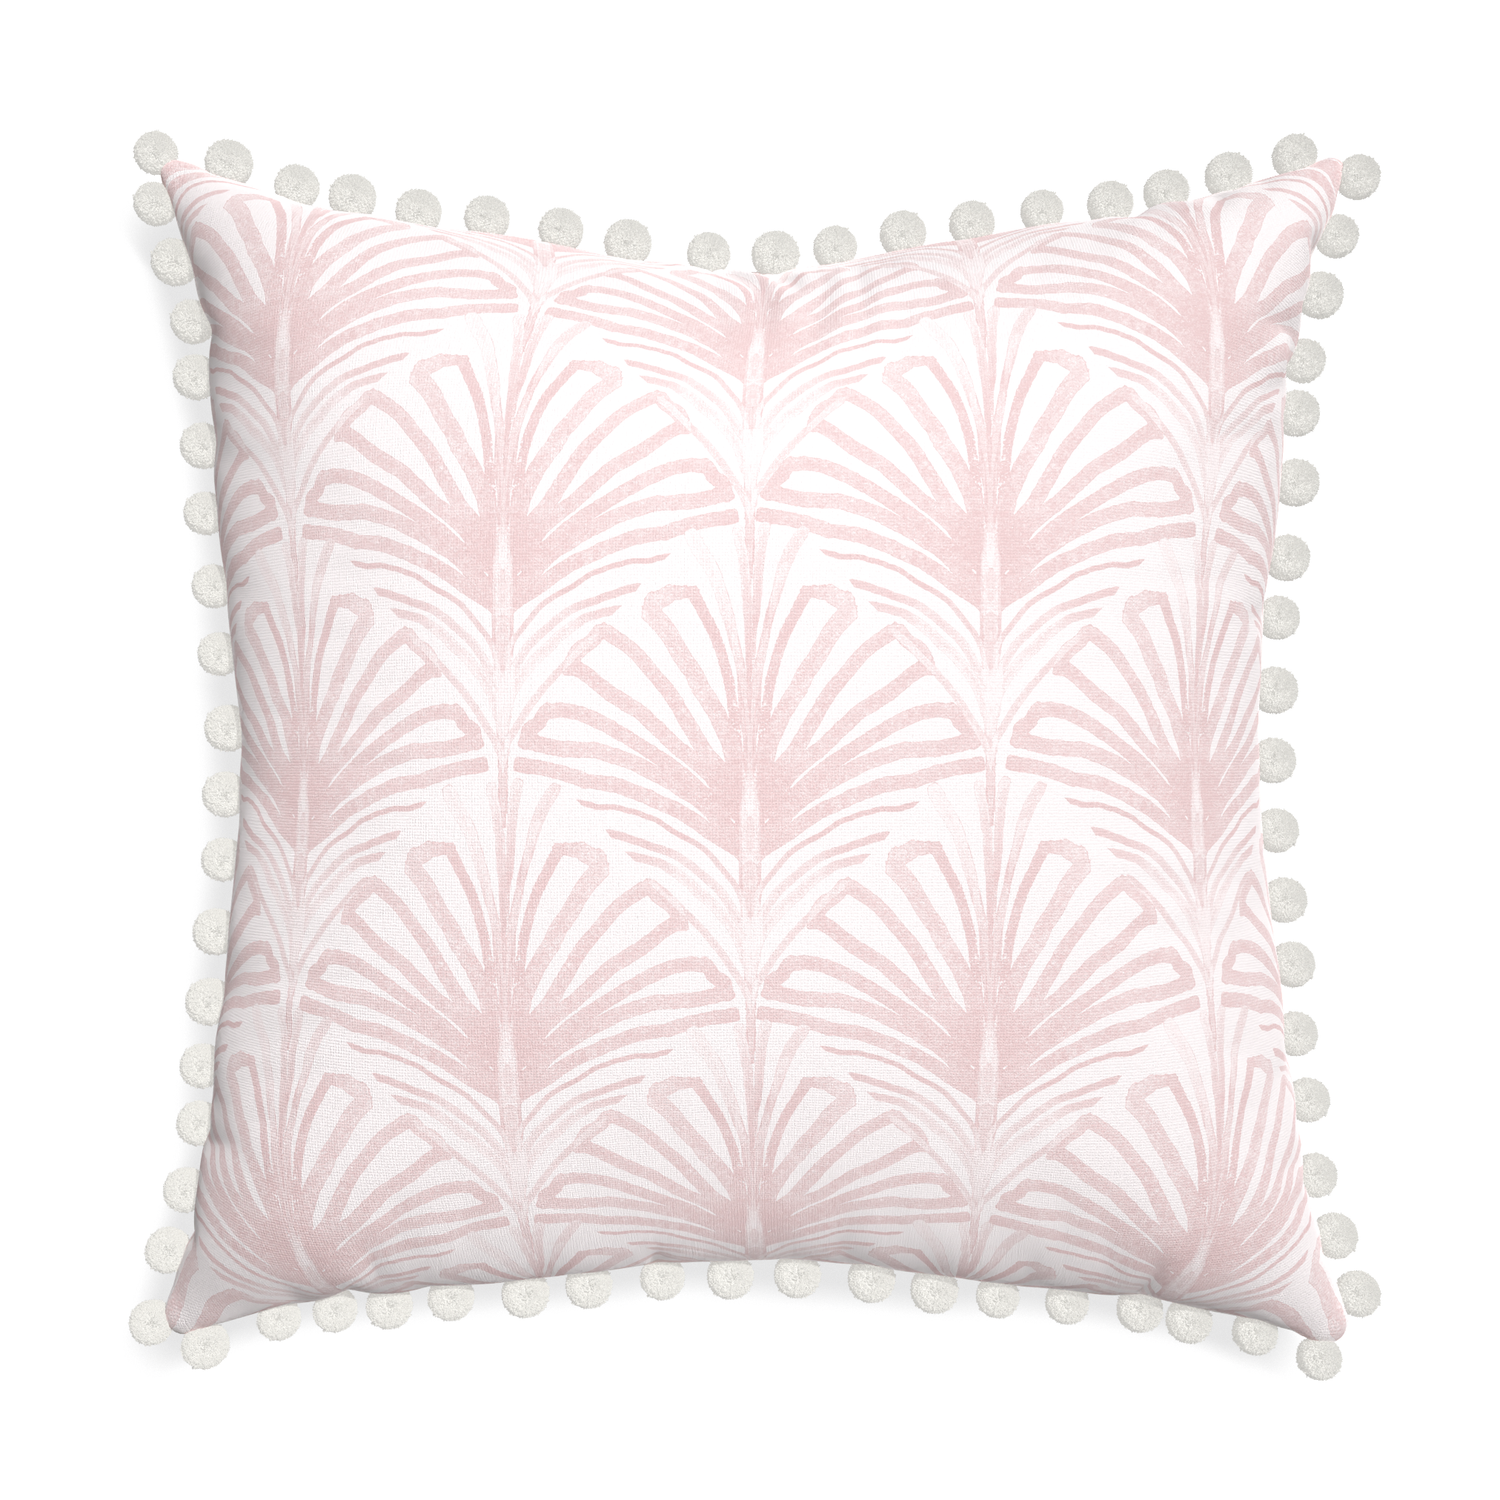 Euro-sham suzy rose custom pillow with snow pom pom on white background